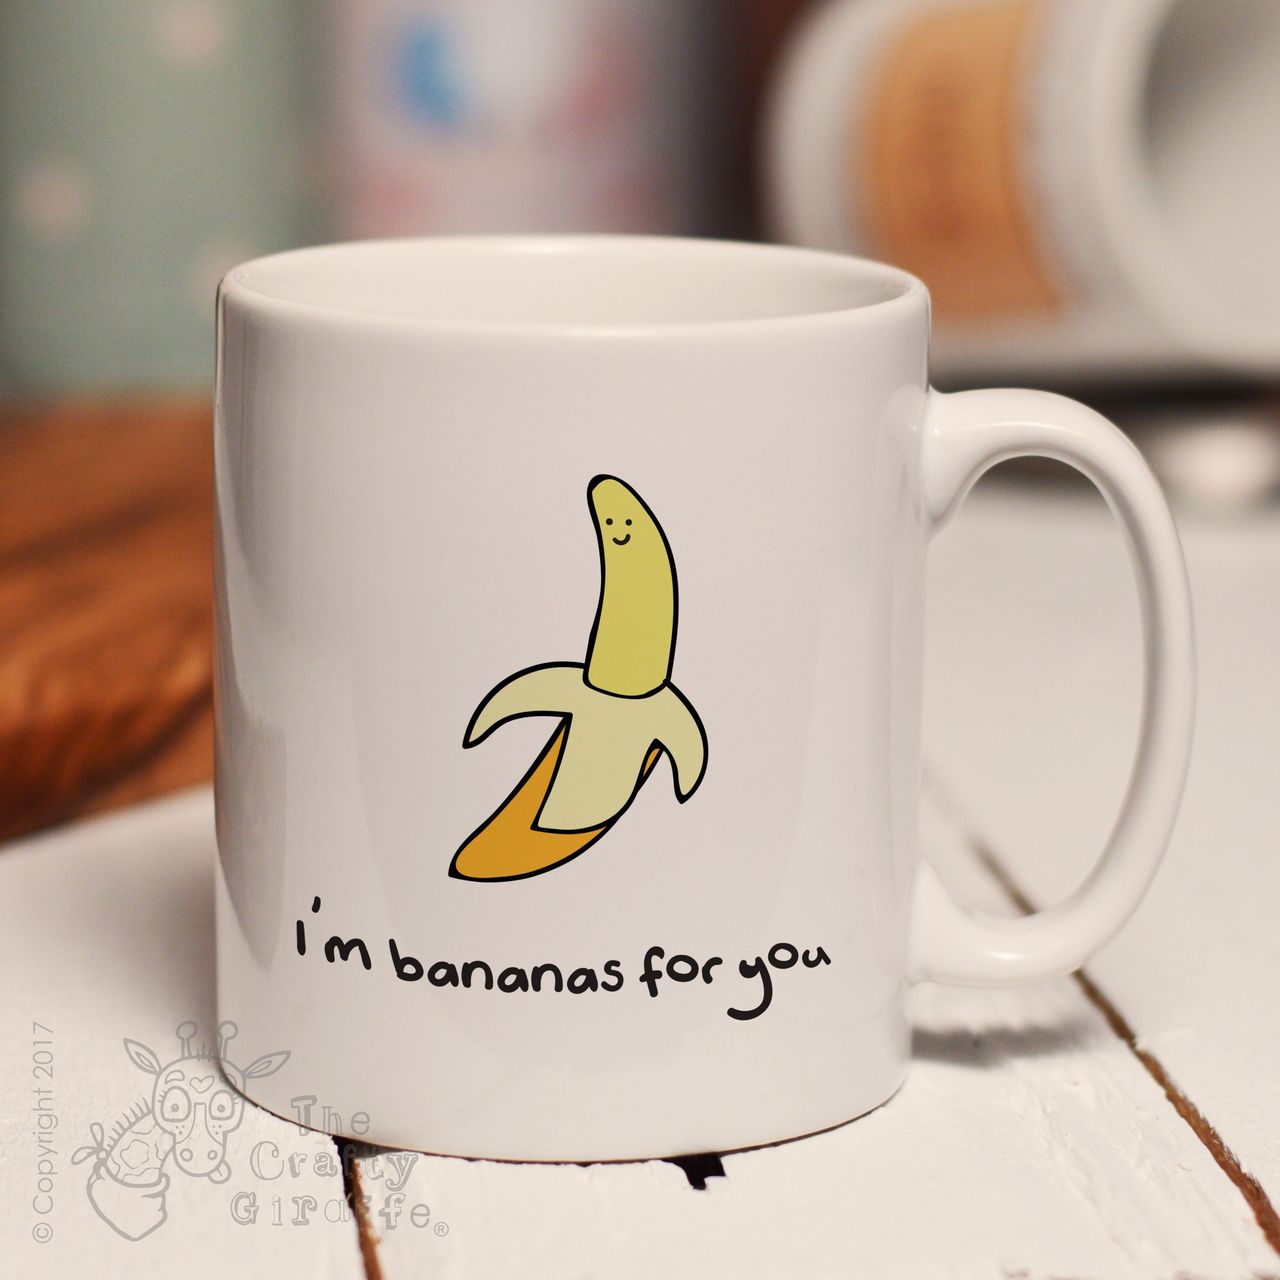 I’m bananas for you mug